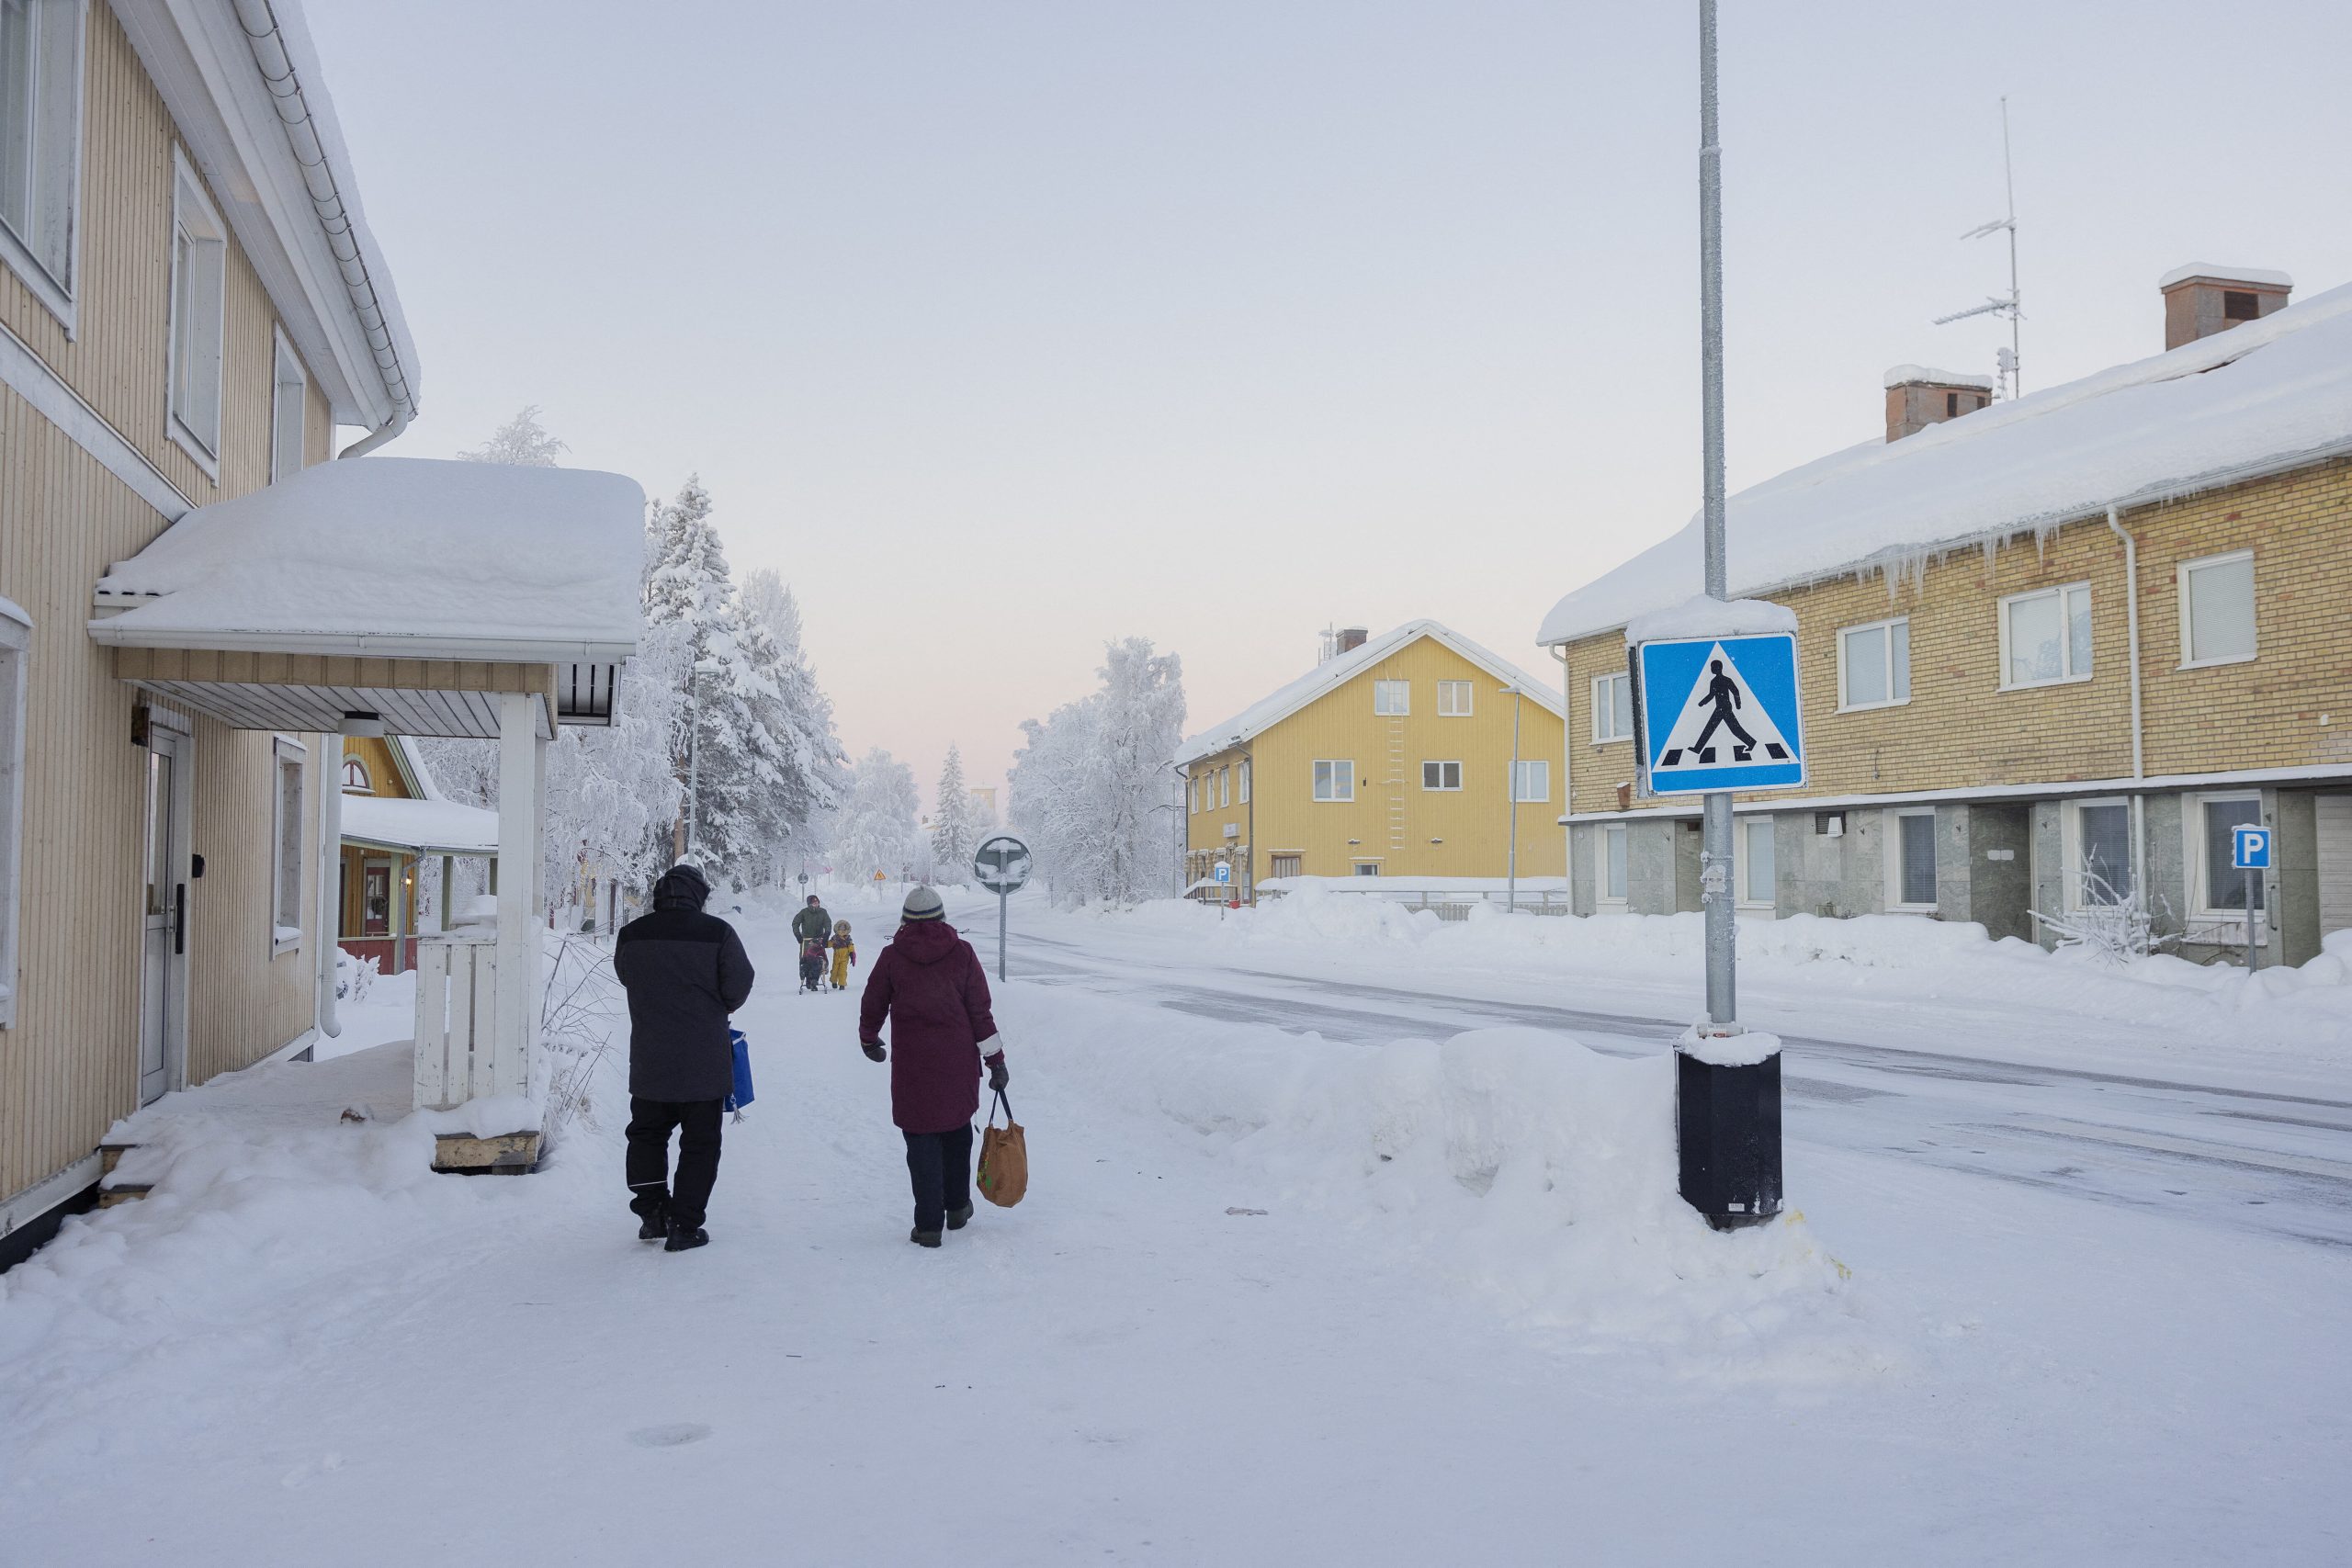 Una severa ondata di freddo polare ha investito la Scandinavia, portando temperature estremamente basse e causando notevoli disagi in Svezia, Finlandia e Danimarca.